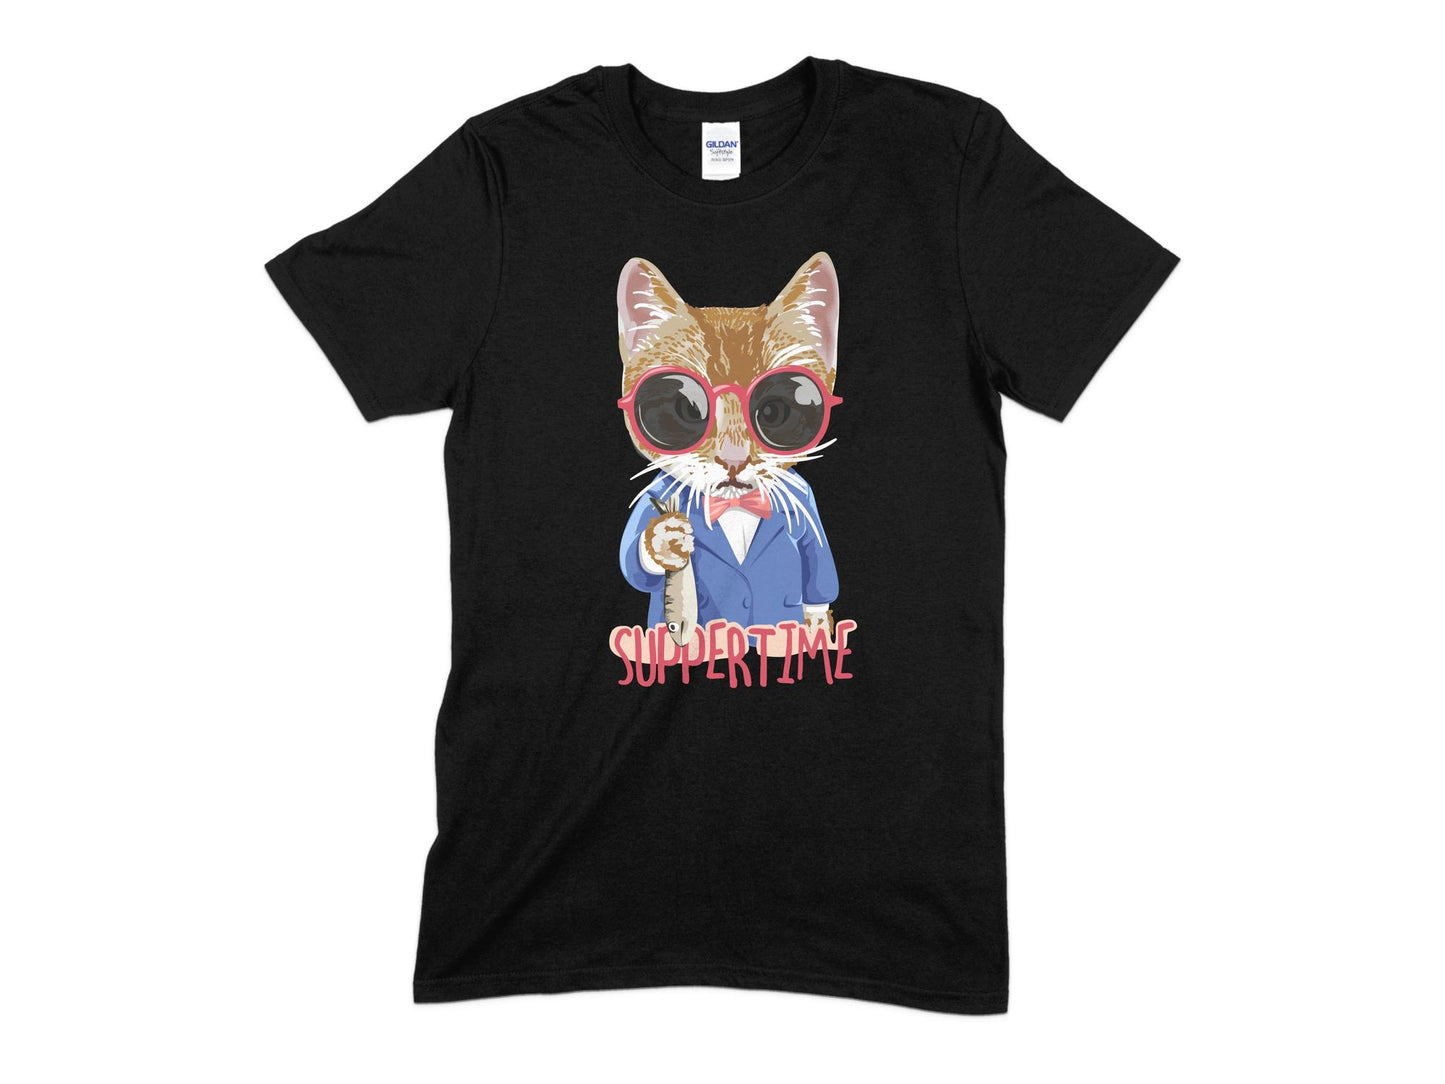 Suppertime Cat T-Shirt, Cute Cat Shirt